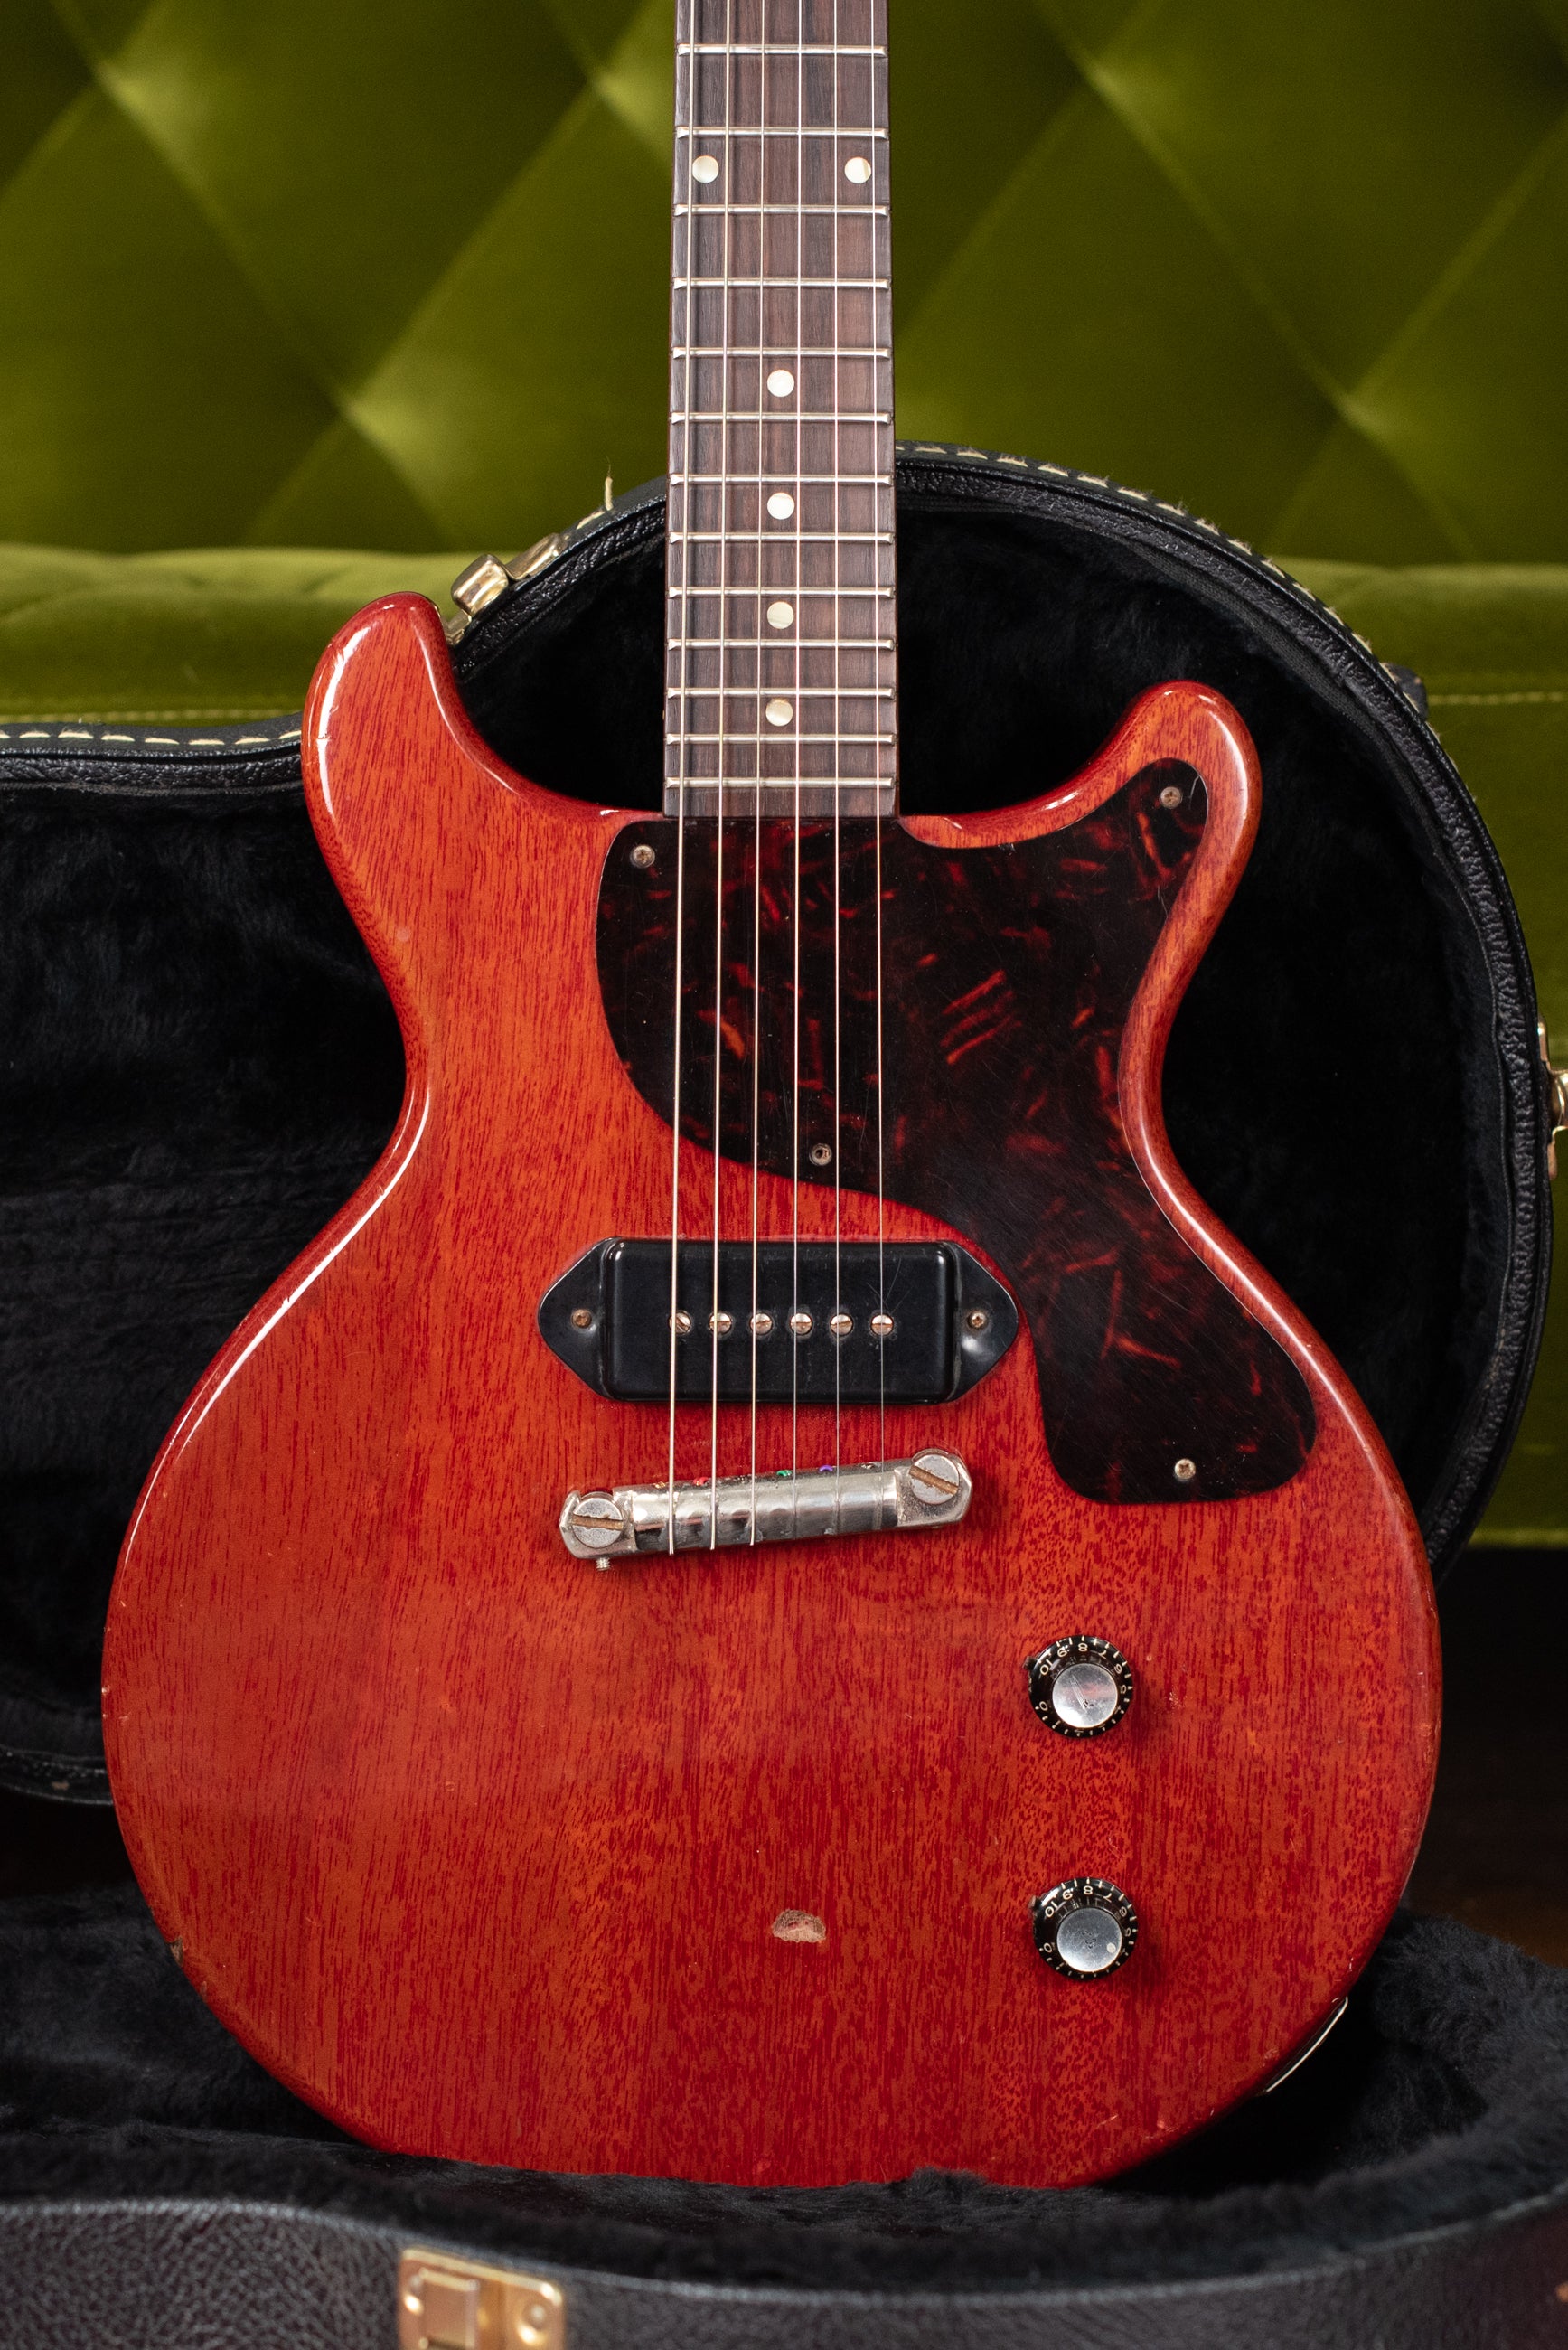 1961 Gibson Les Paul Junior guitar